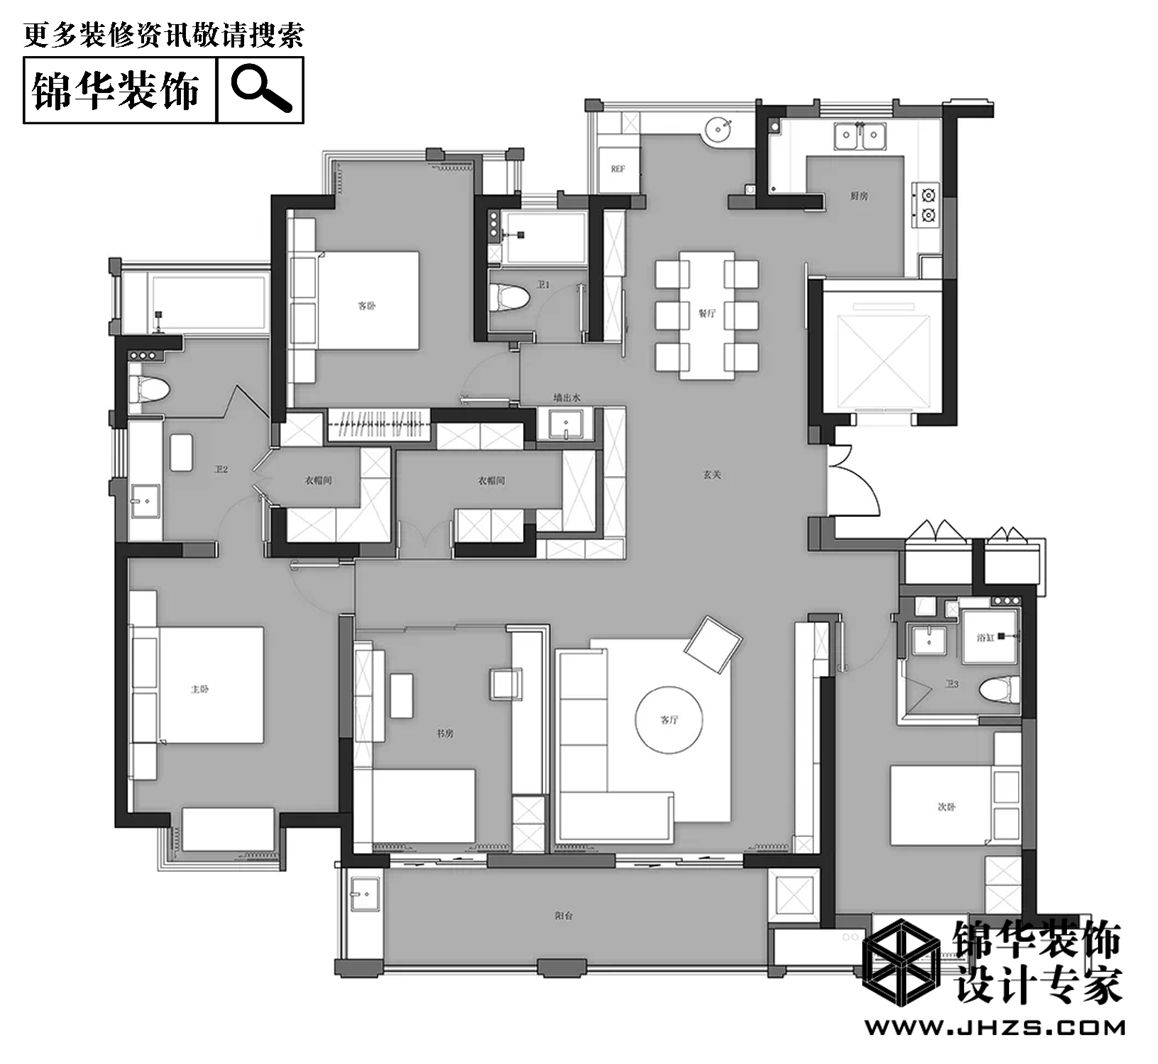 东方明珠-现代简约-160㎡-四室两厅装修-四室两厅-现代简约